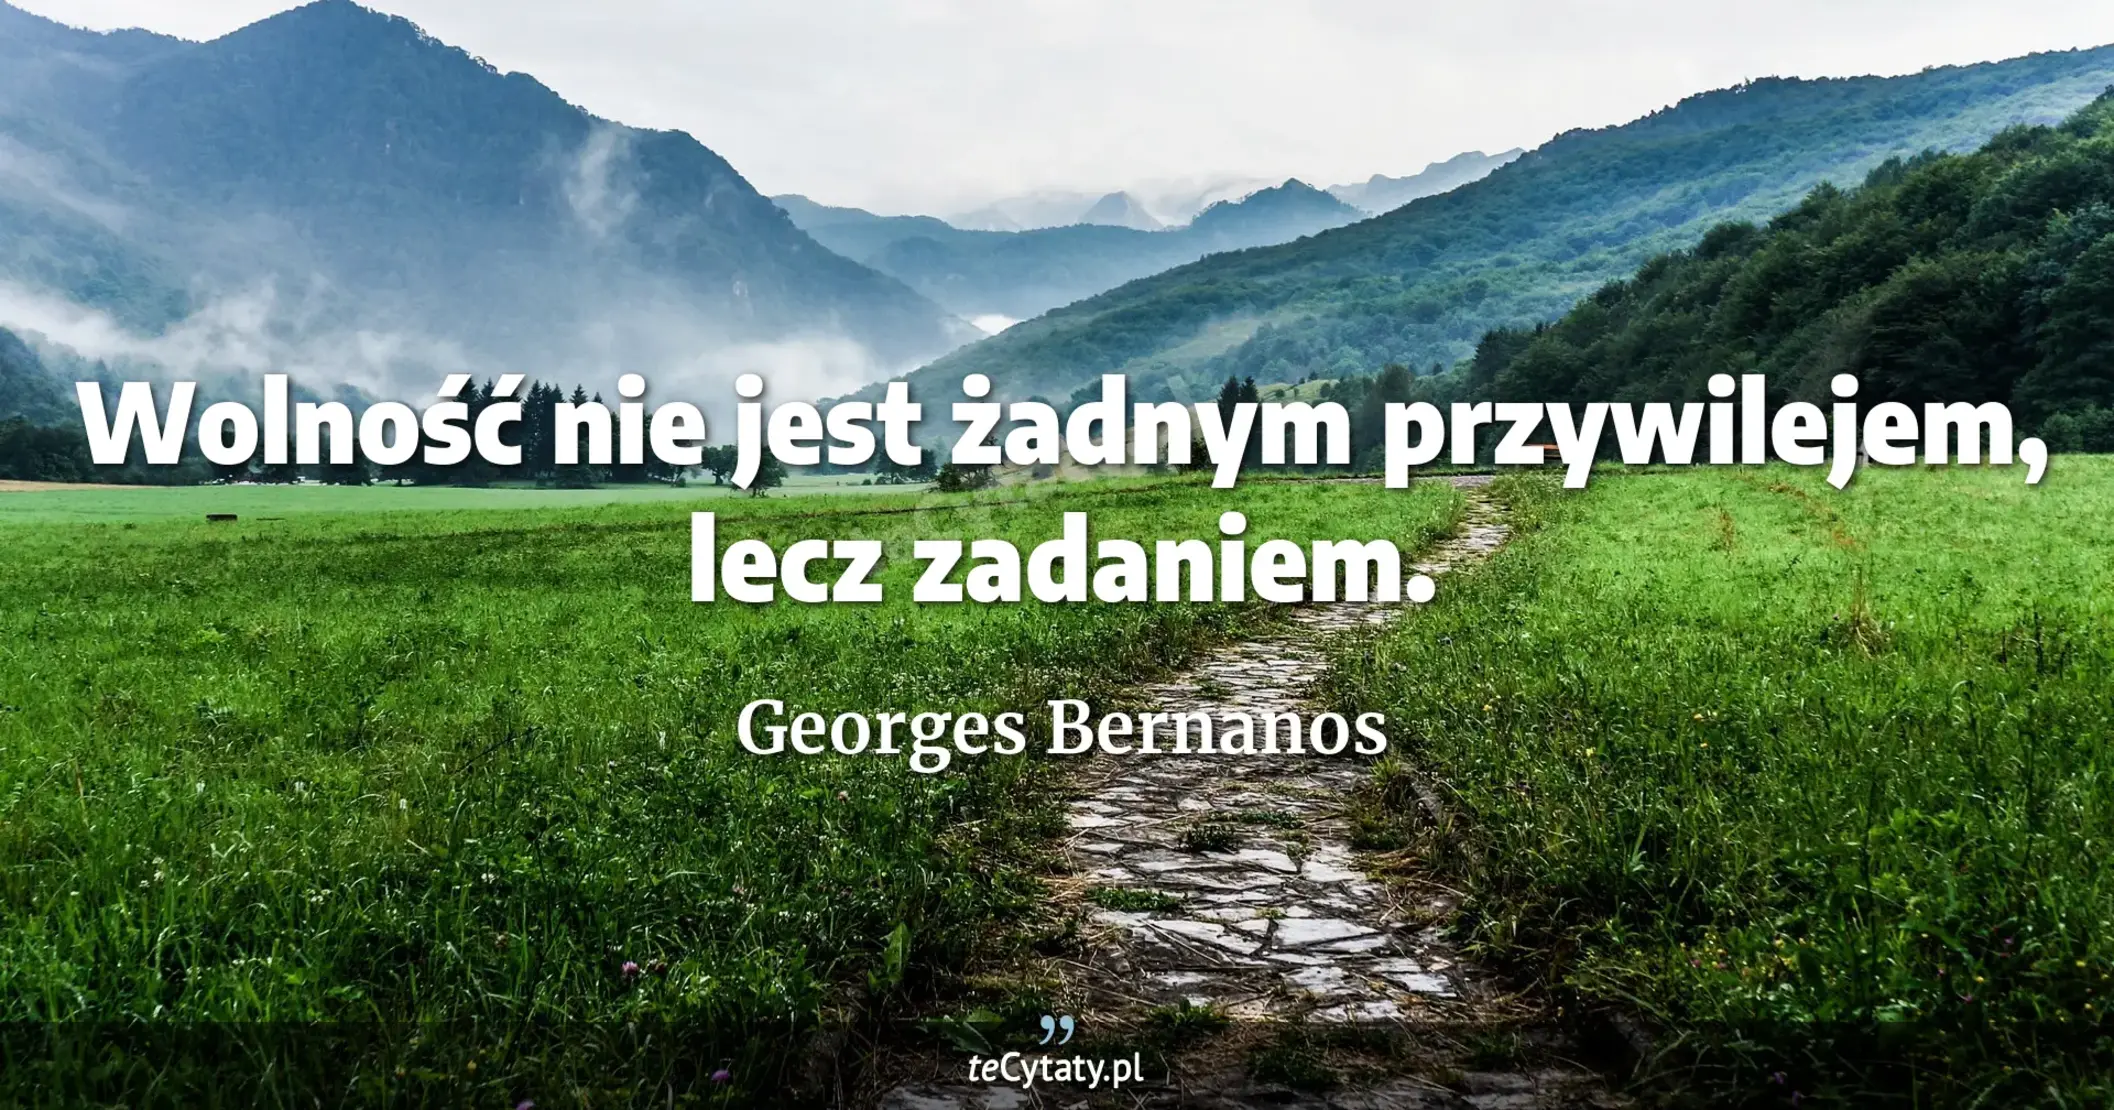 Wolność nie jest żadnym przywilejem, lecz zadaniem. - Georges Bernanos